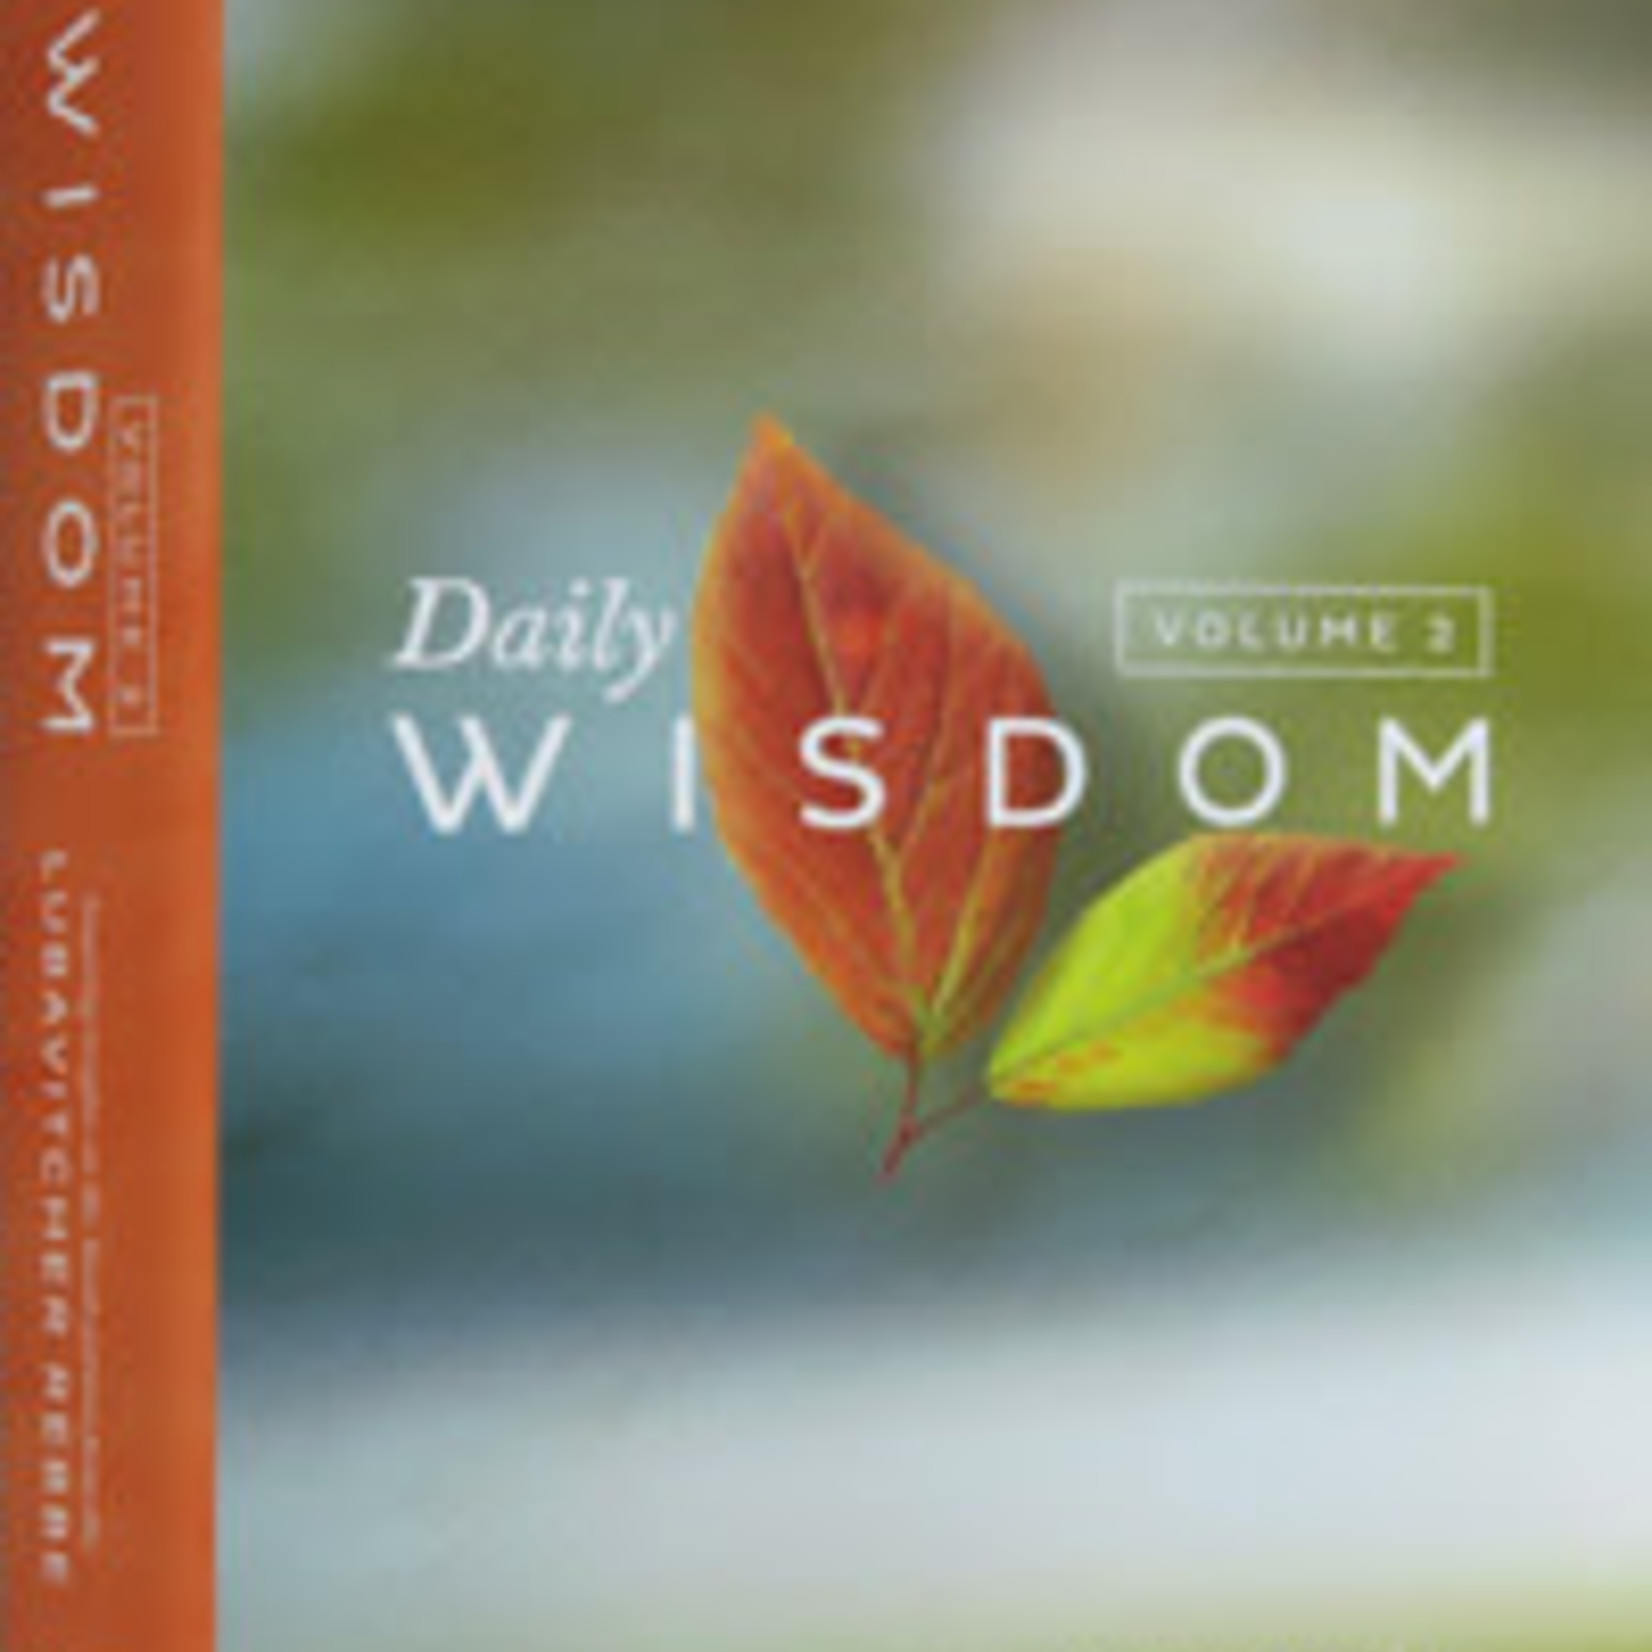 Daily Wisdom vol. 2 - Standard size